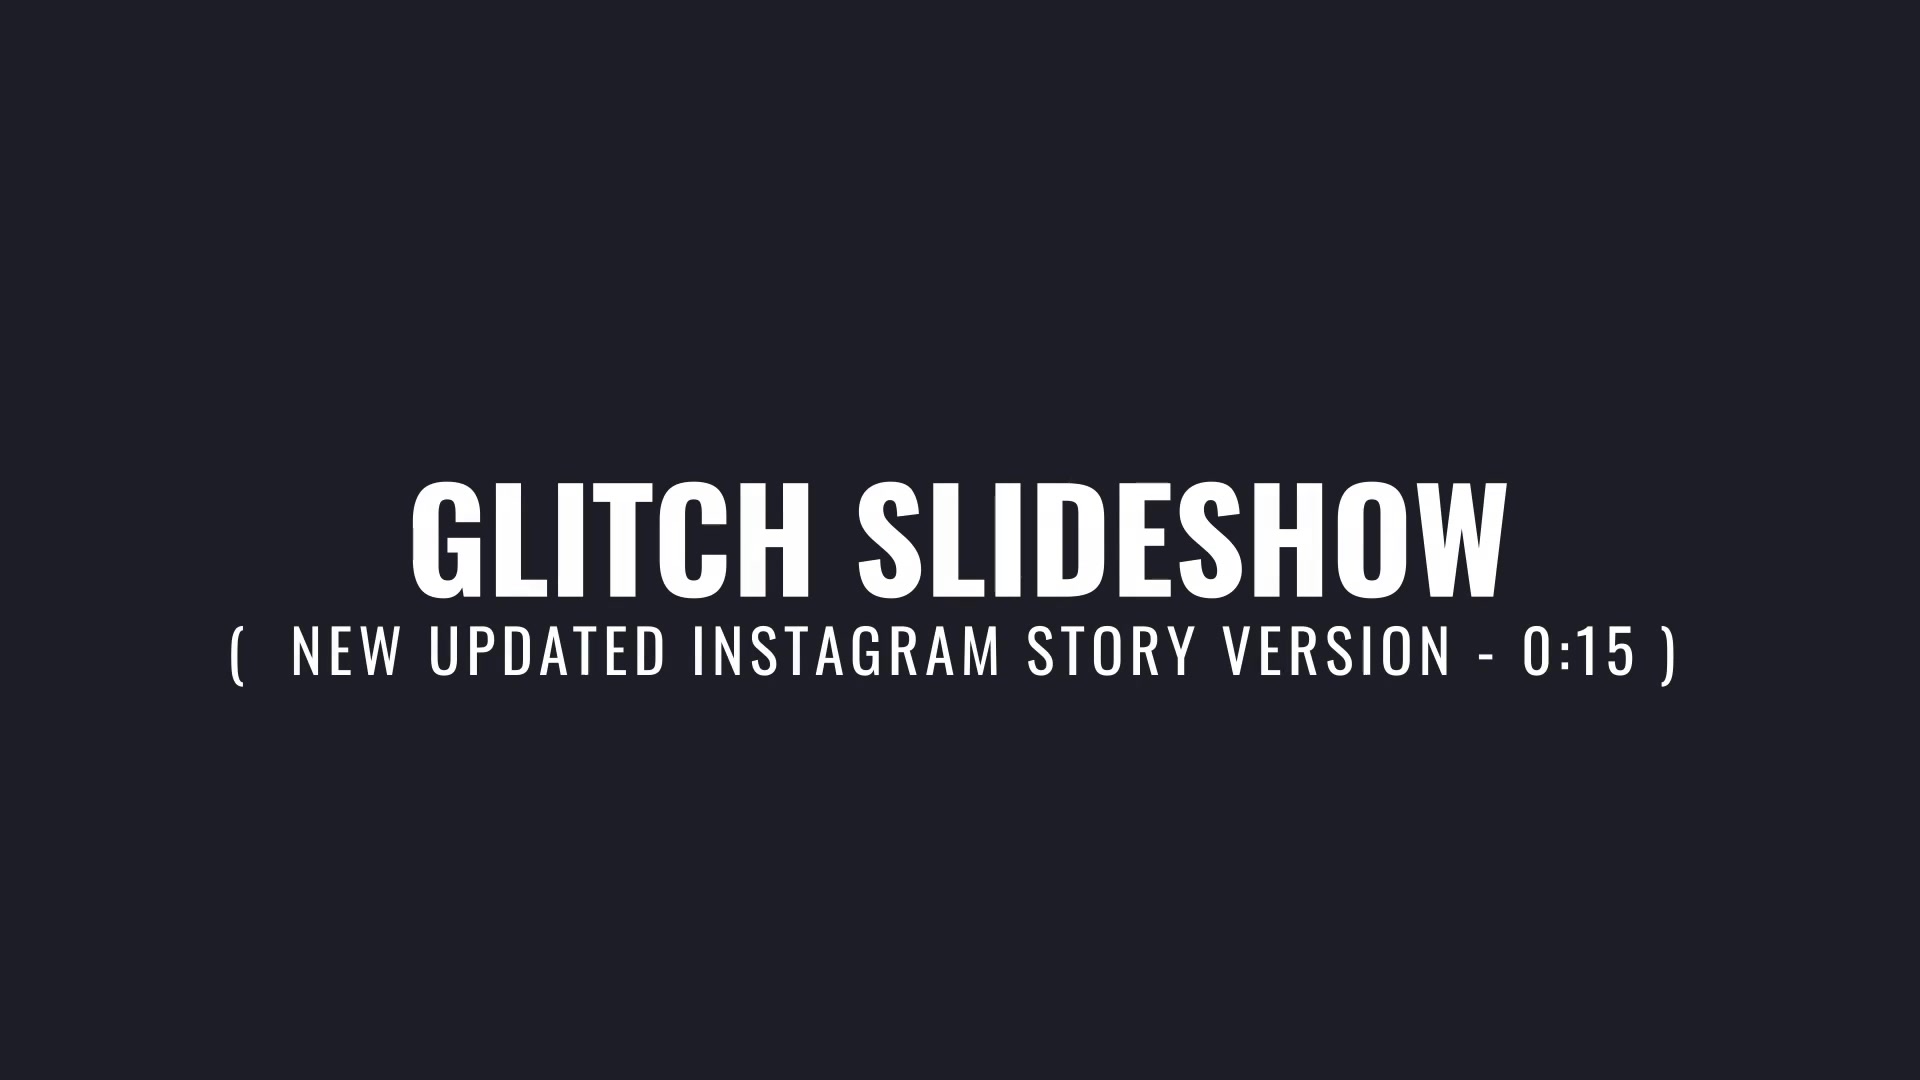 Glitch Slideshow Videohive 35712254 Premiere Pro Image 10